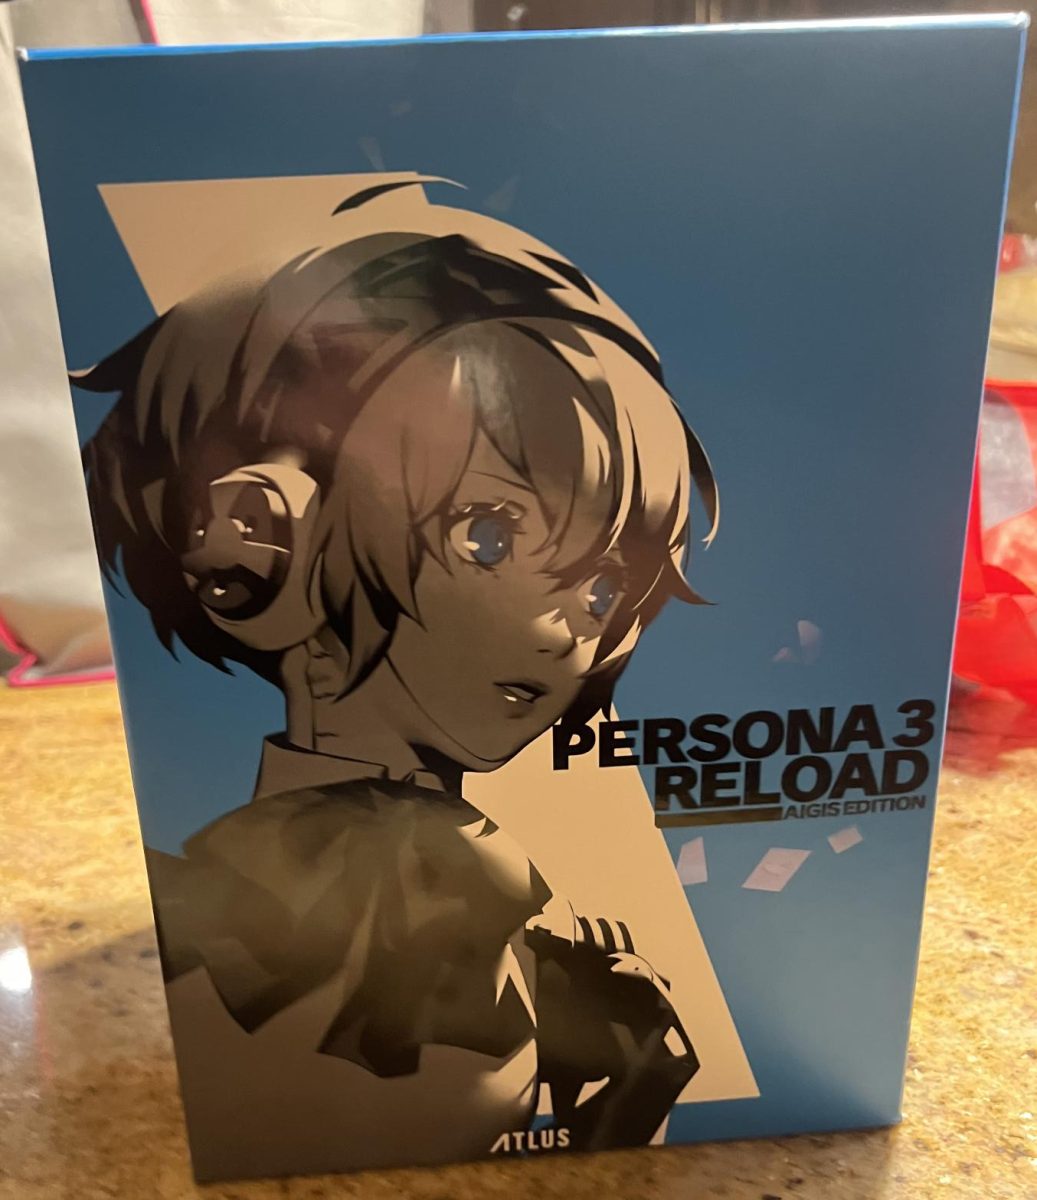 The+Persona+3+Reload+Collectors+Edition+box